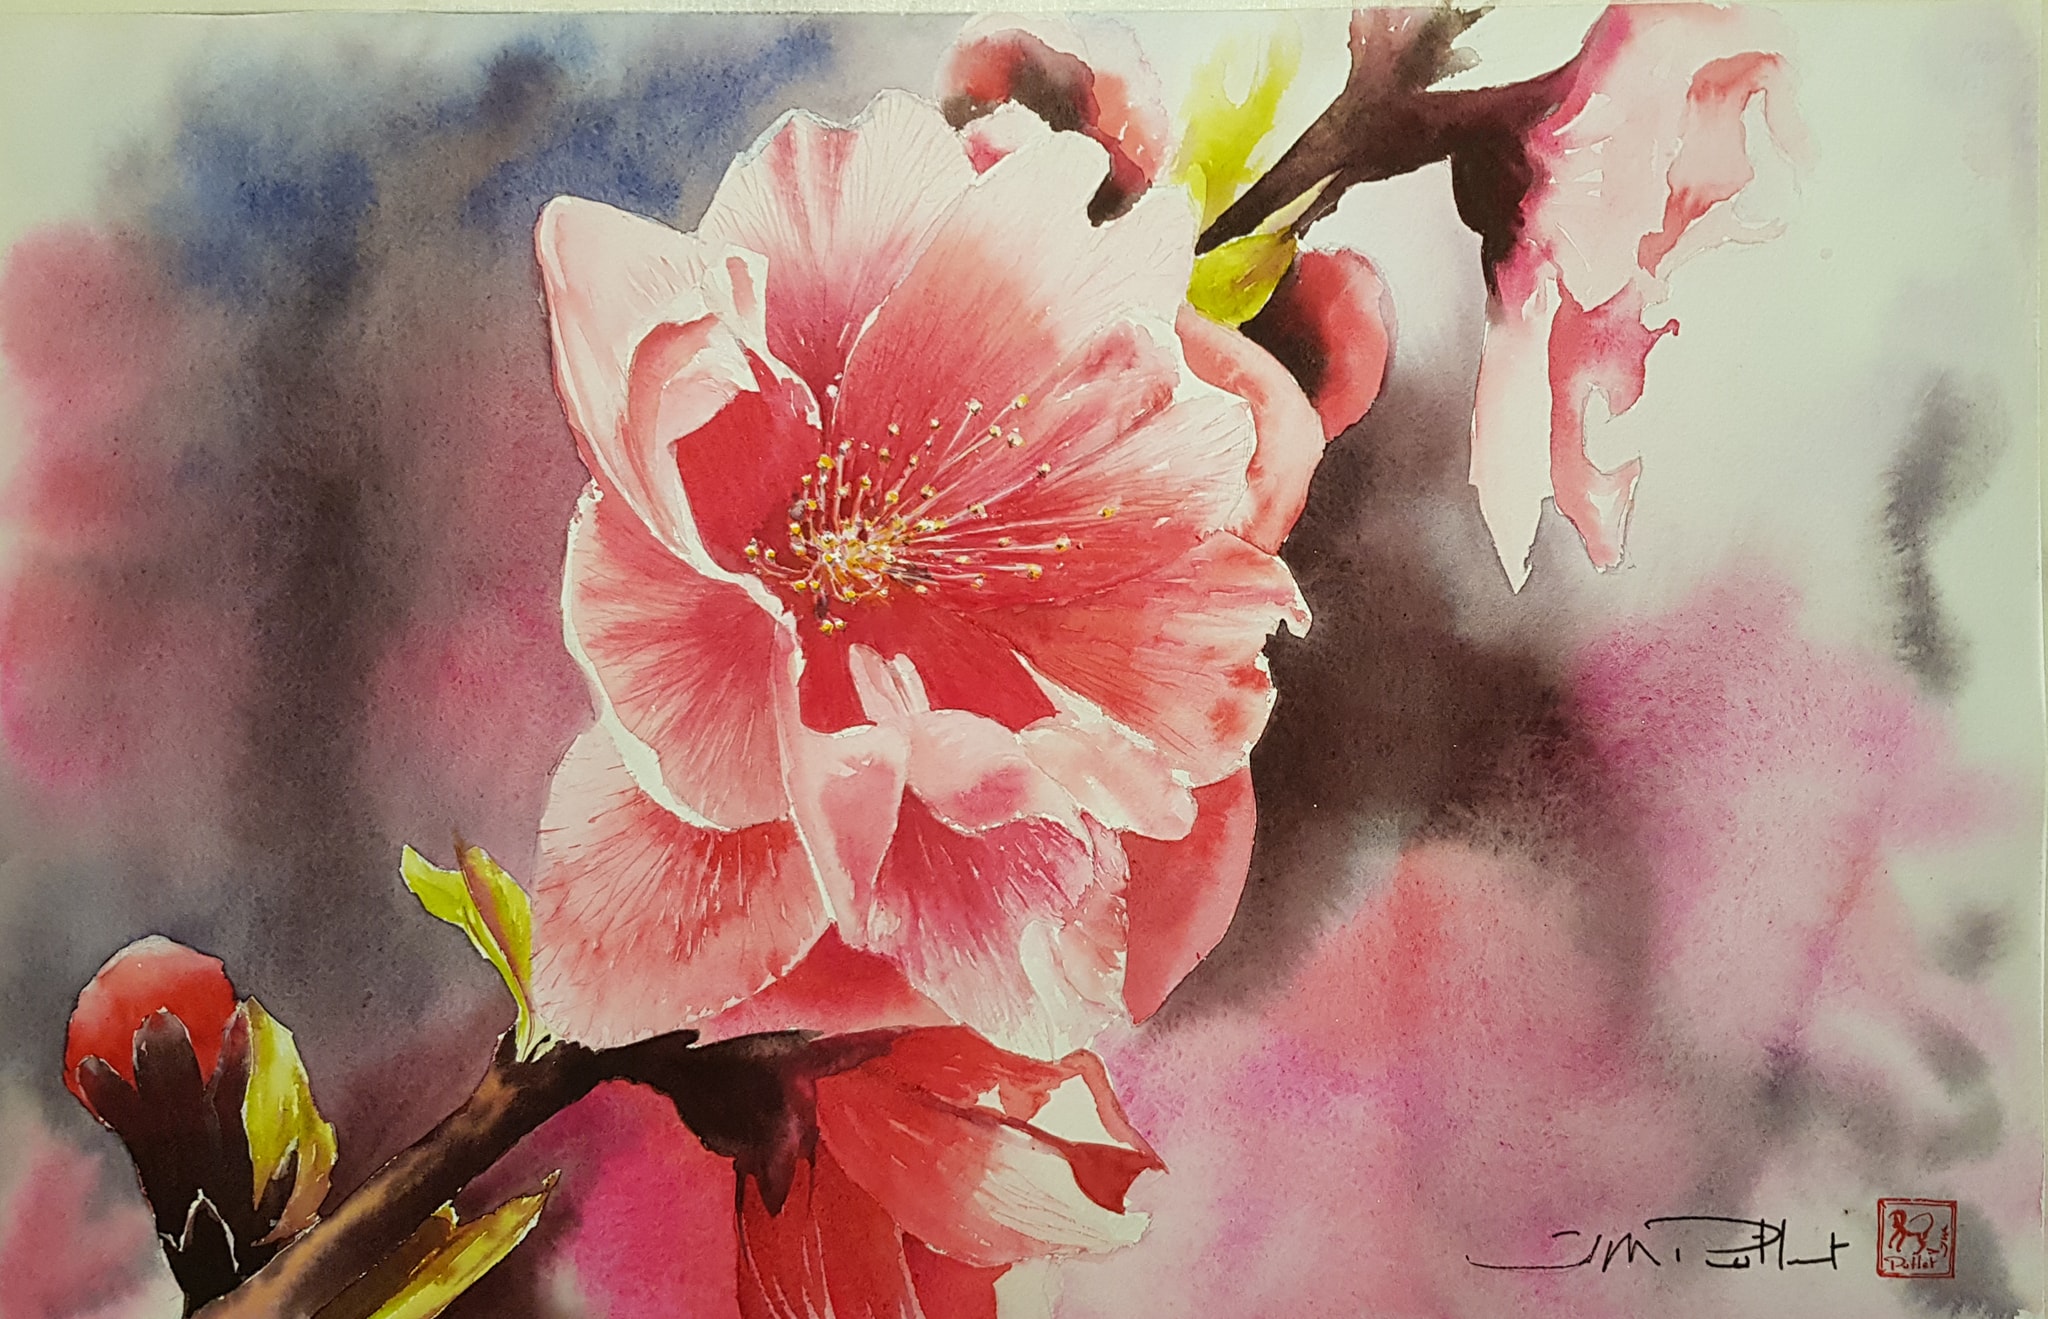 Vẽ hoa Mai bằng màu nước I Màu nước Queen  Watercolor Tutorial  Easy  Apricot Blossom Drawing  YouTube